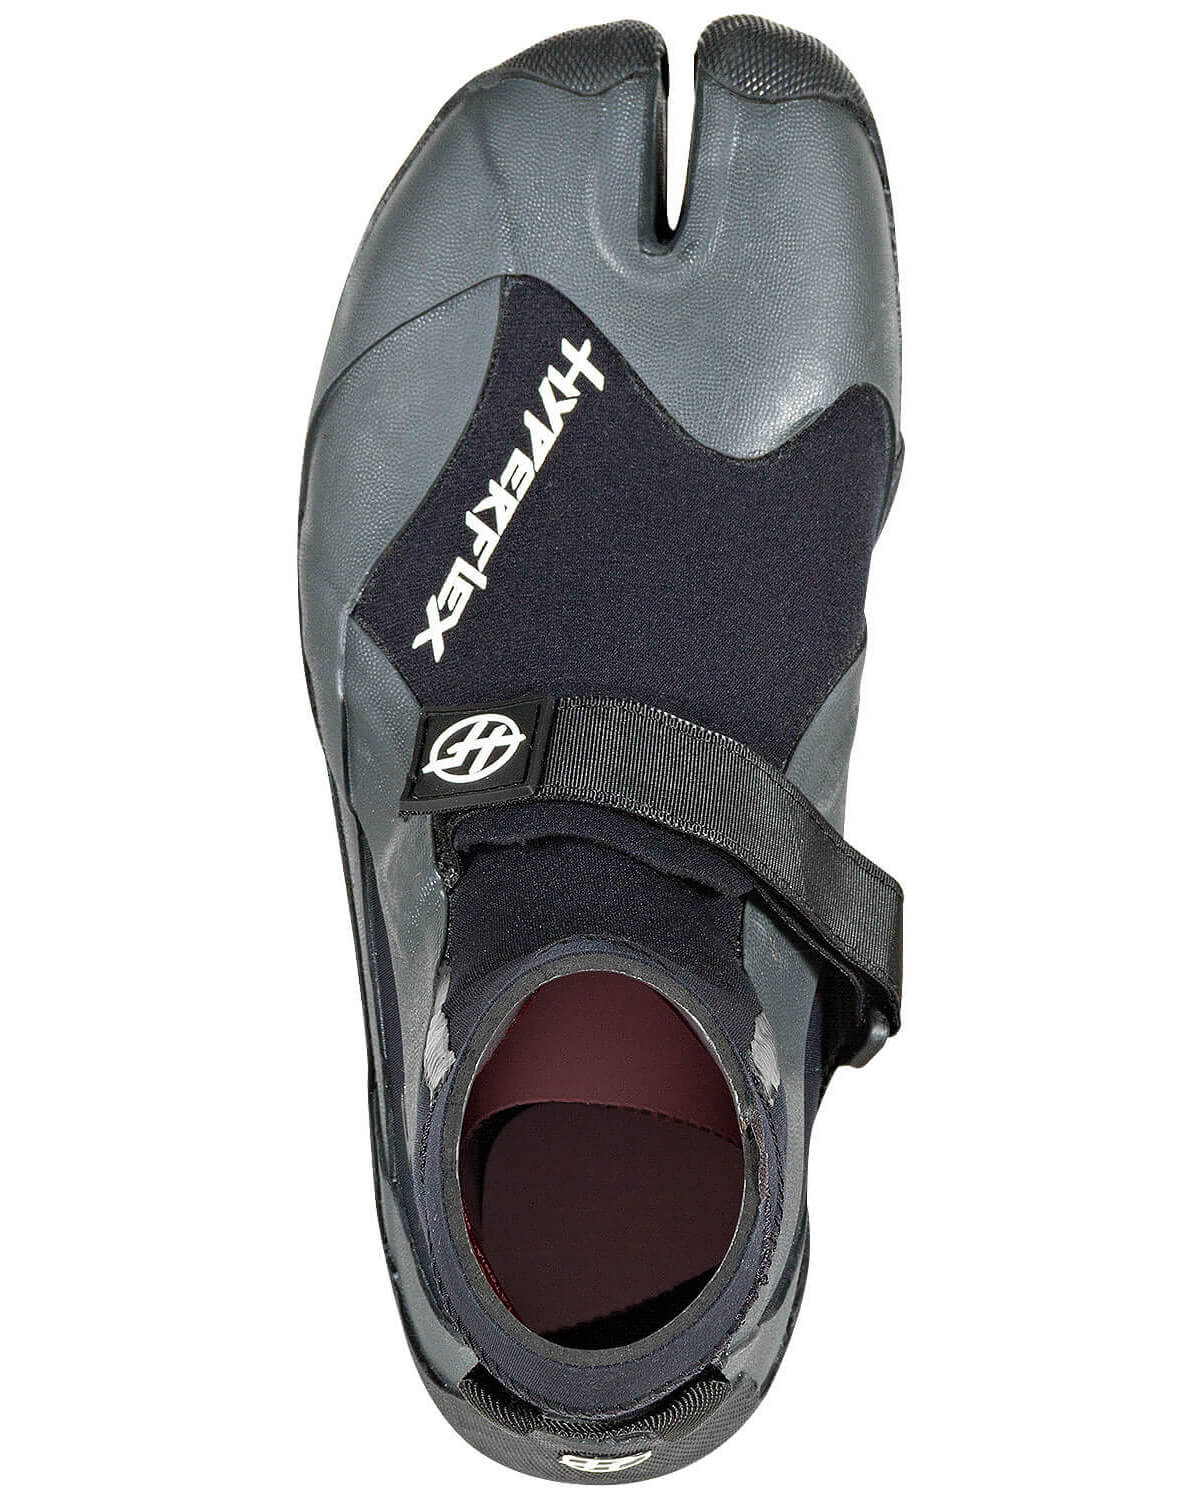 3mm HyperFlex PRO Split Toe Wetsuit Boots